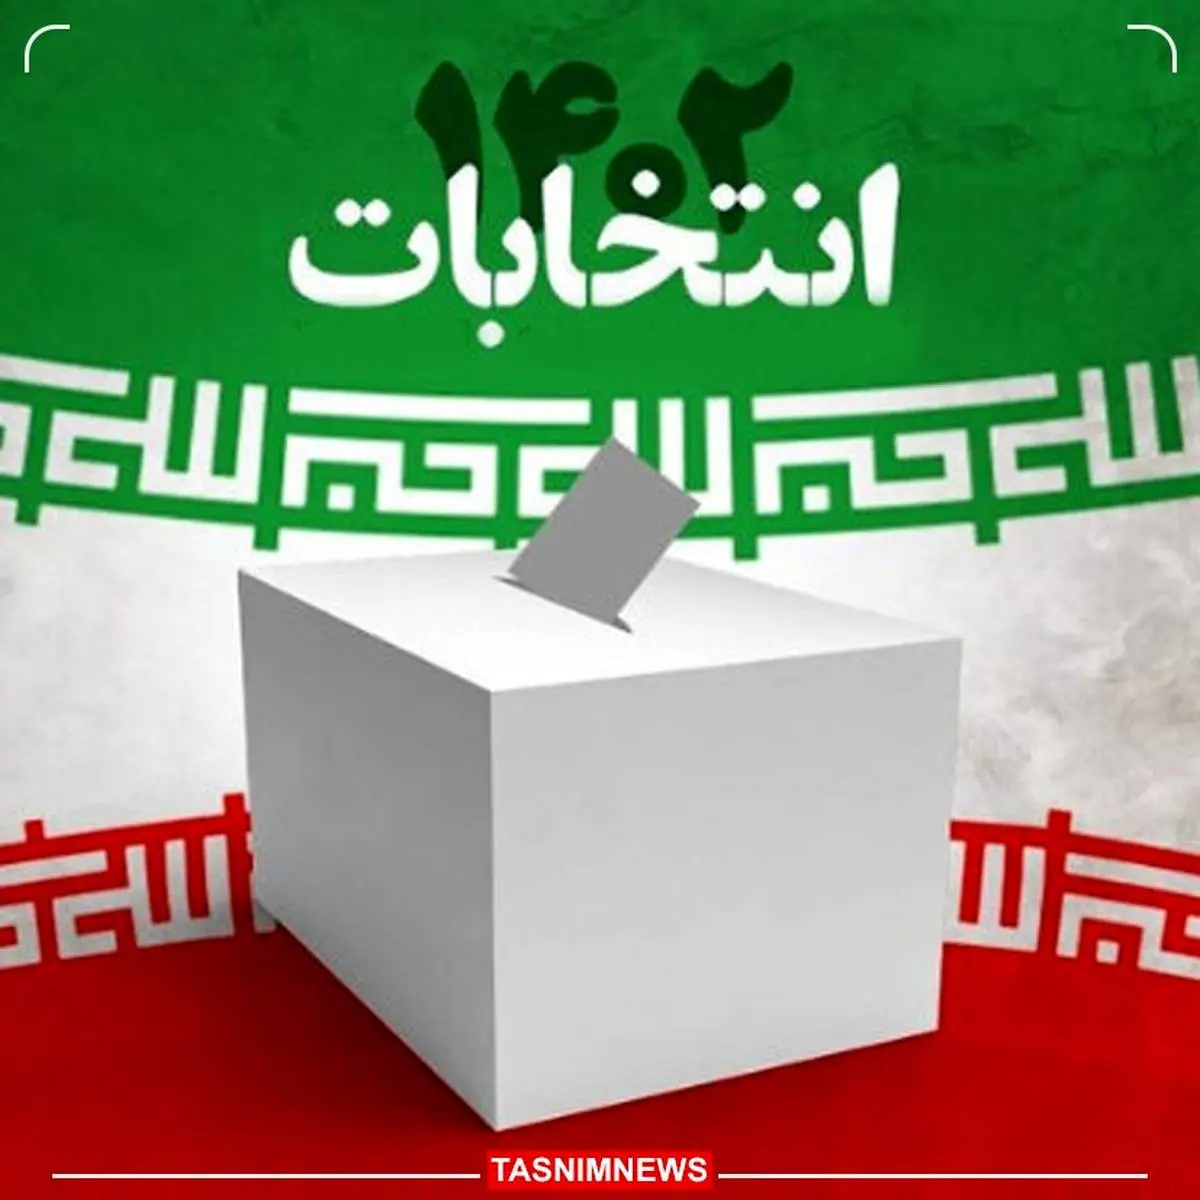 نتایج خبرگان رهبری در خوزستان اعلام شد | چه کسانی راهی شورای مجلس خبرگان شدند؟ 